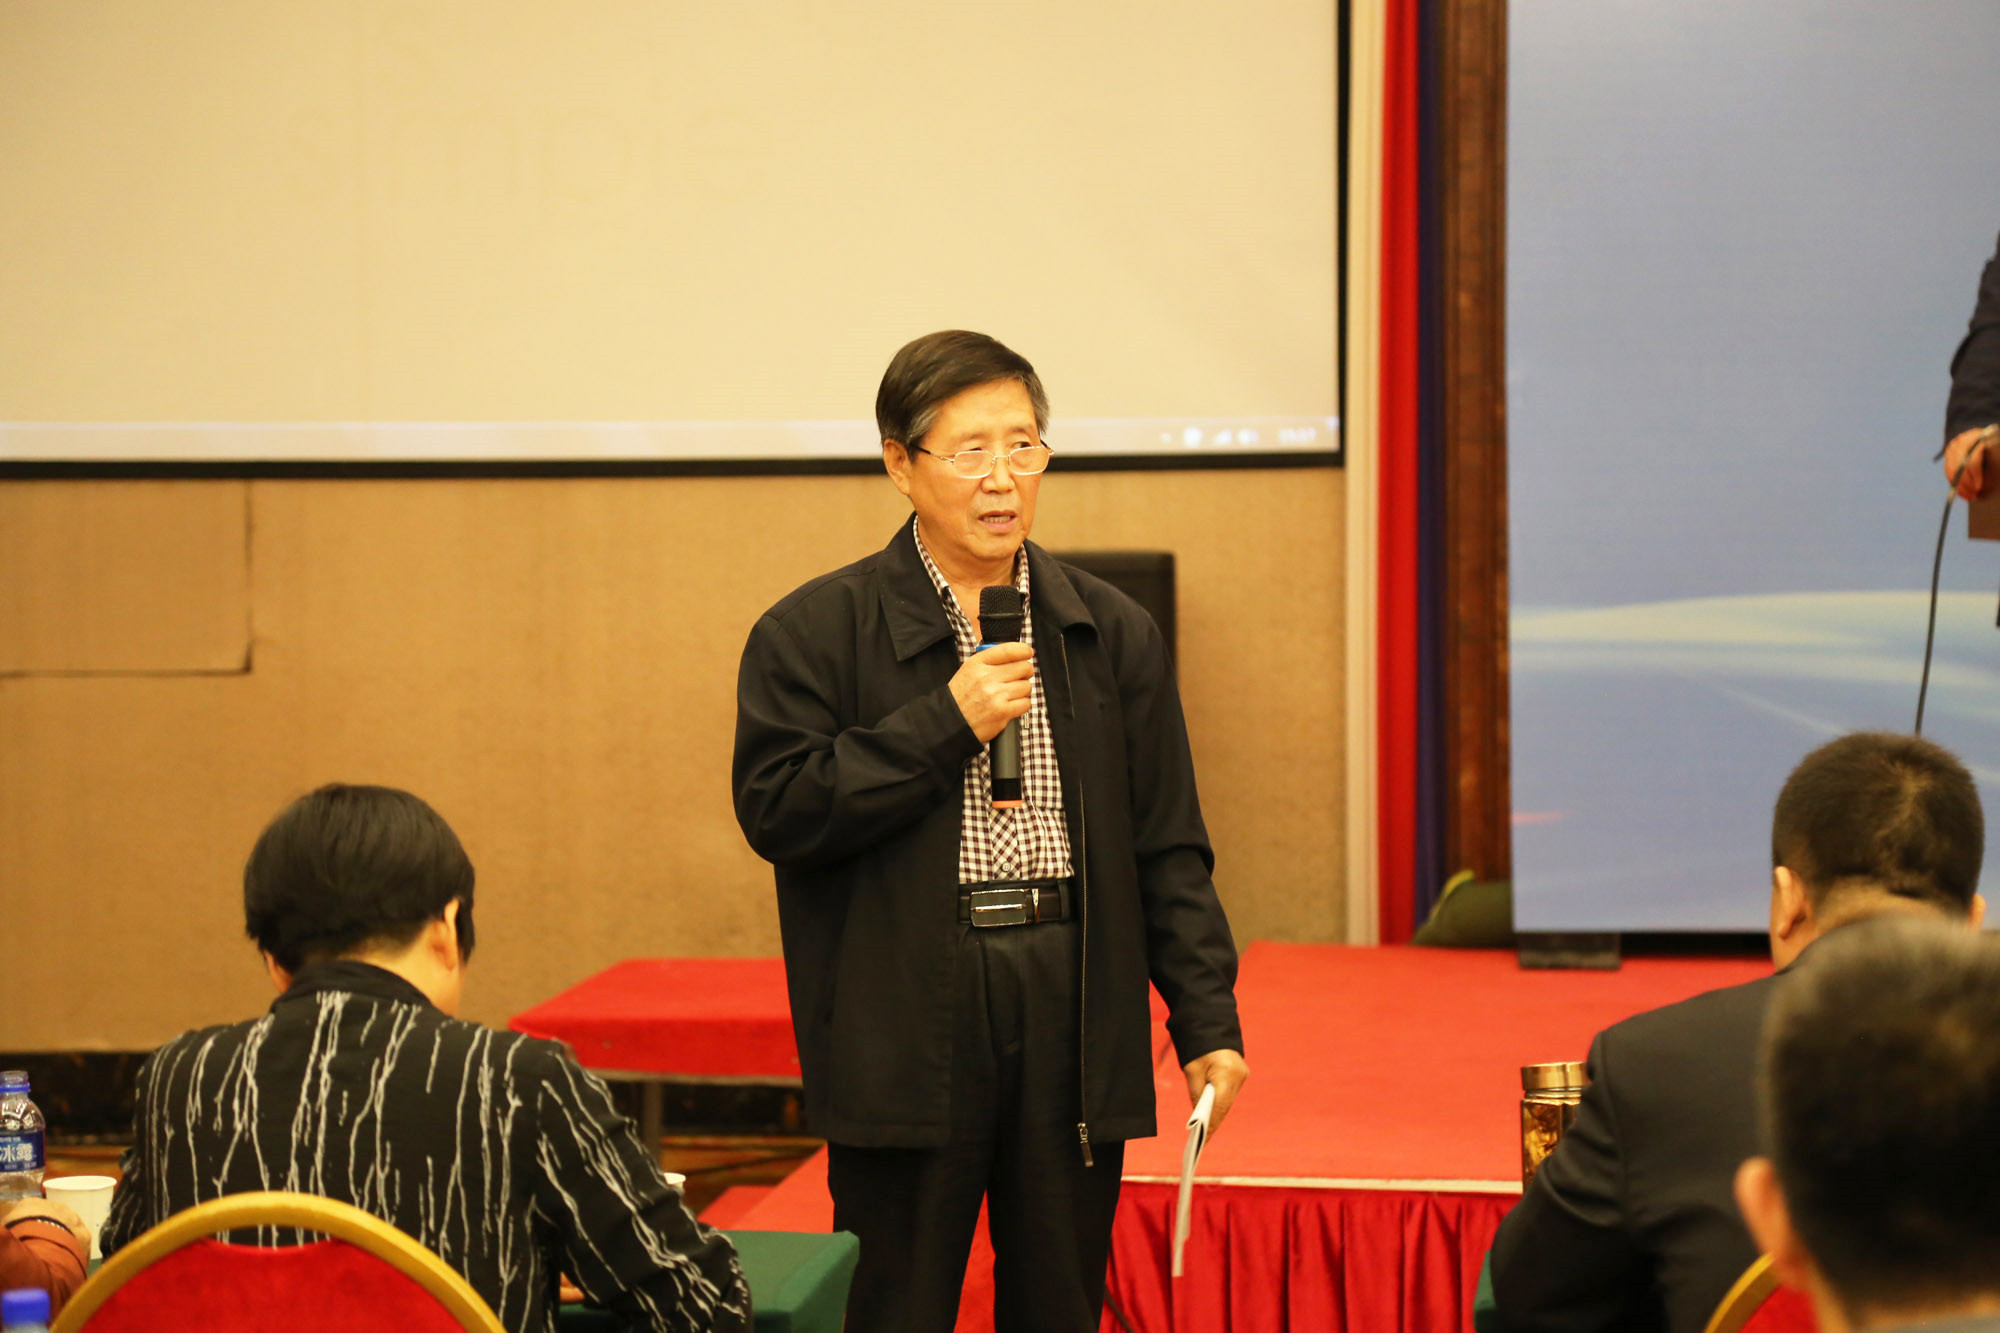 北京中教市培教育研究院常务副院长魏续臻、臧富仁、吕凤祥分别主持了部分场次的论坛。 